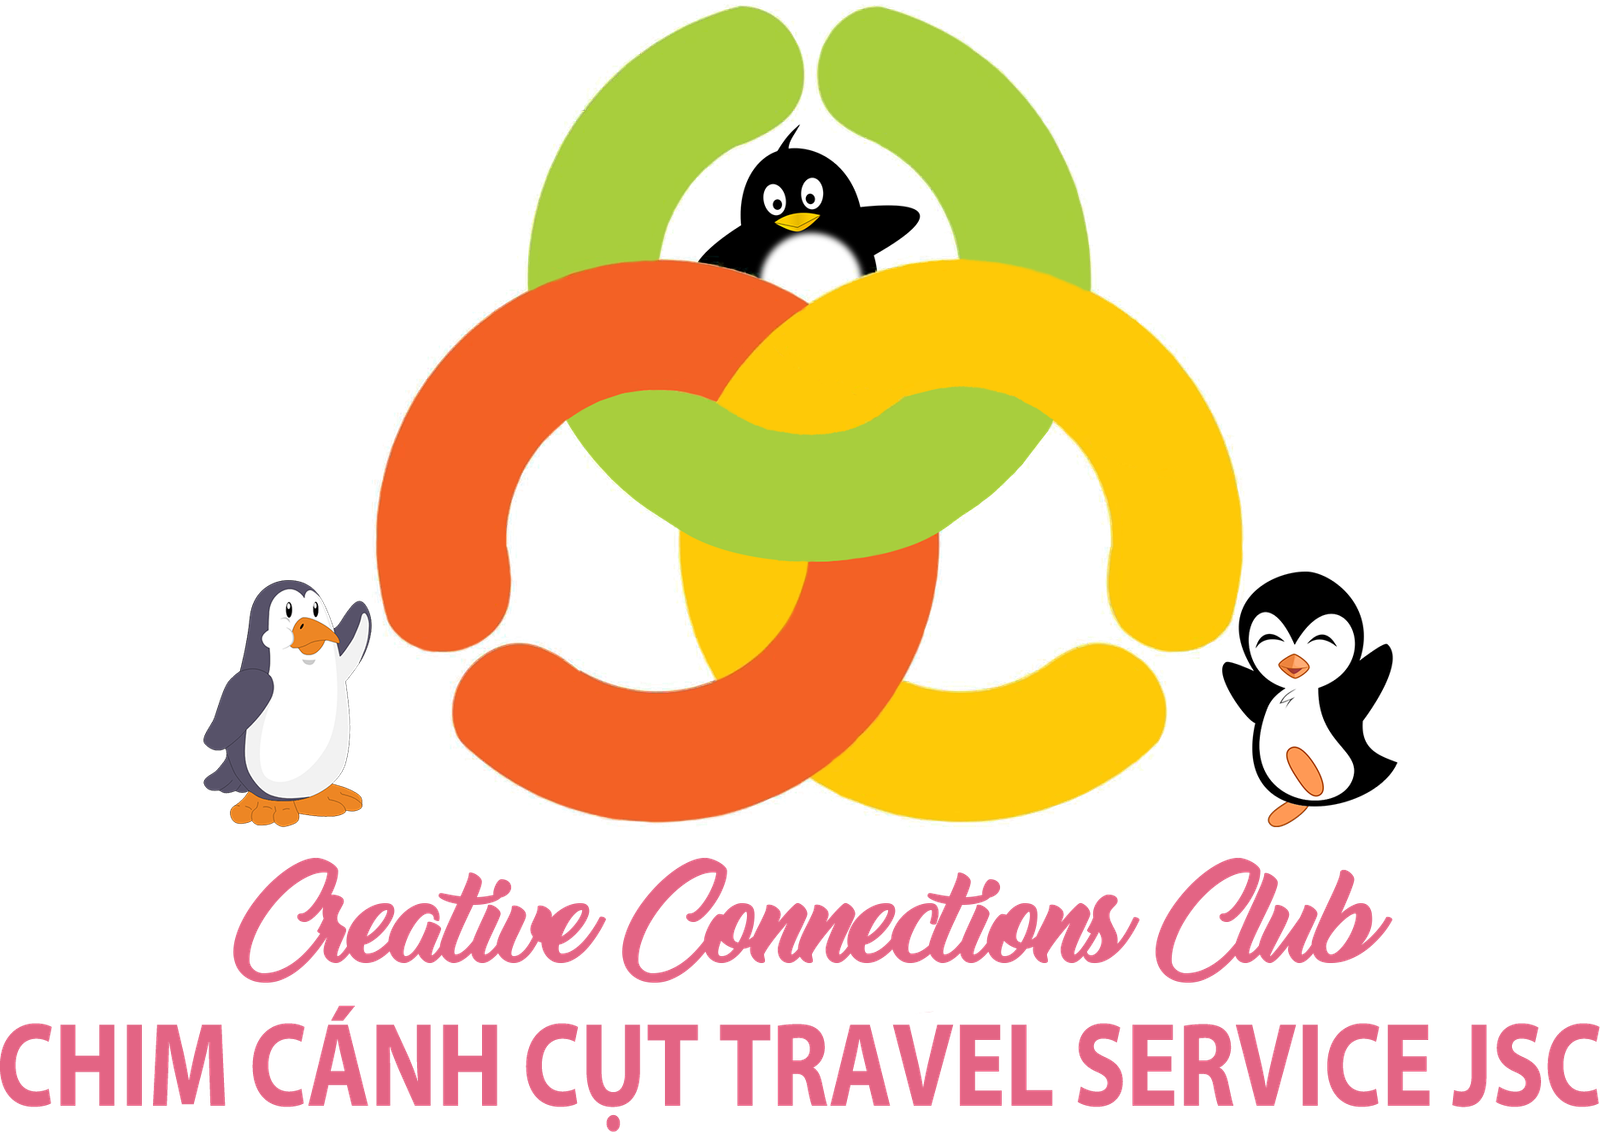 CCC Travel Service JSC